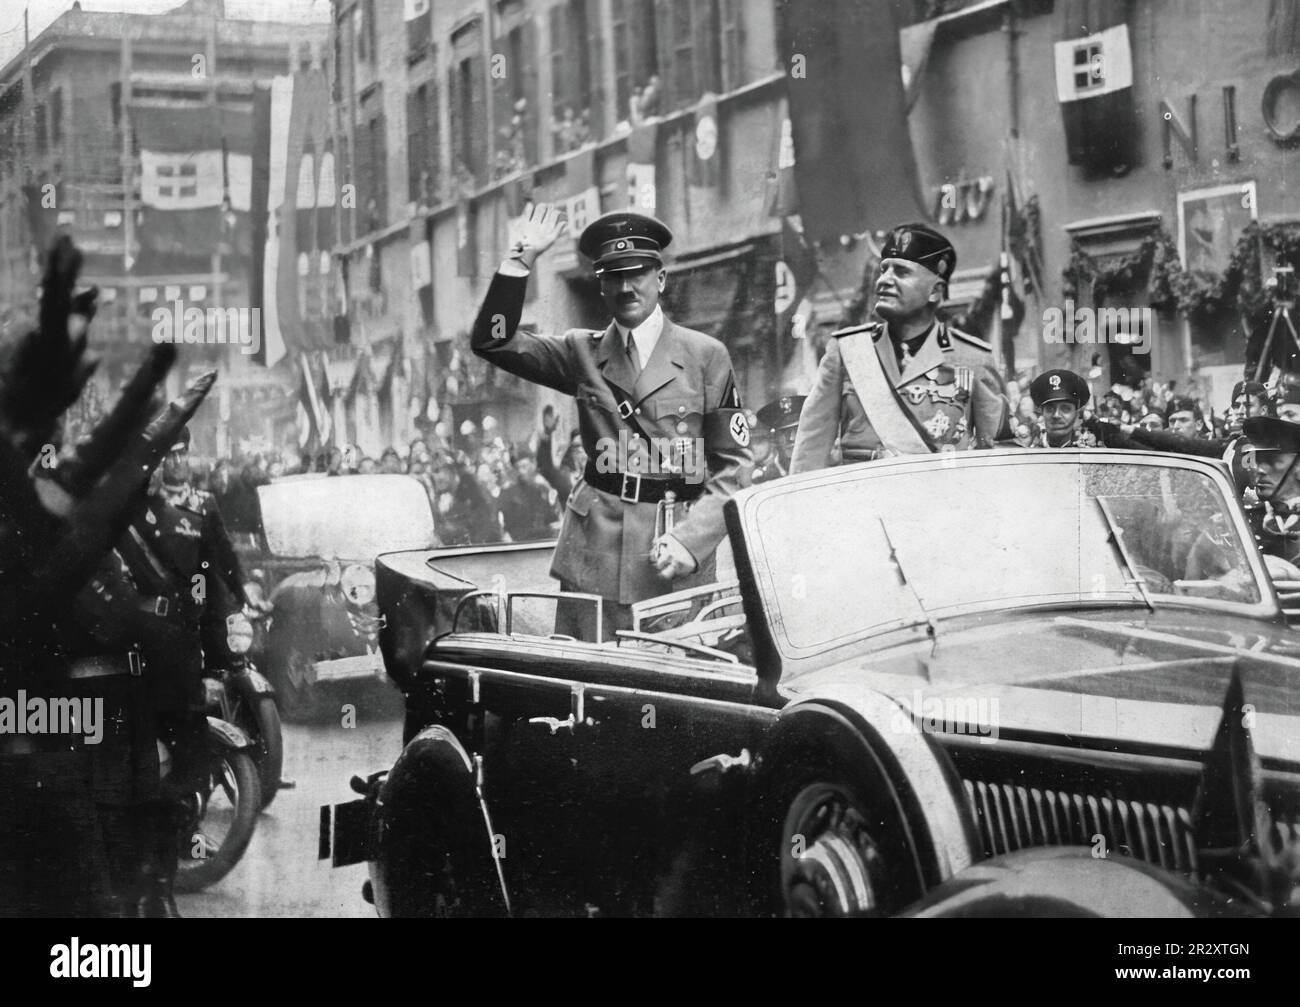 Incontro del dittatore italiano Benito Mussolini con il dittatore nazista Hitler in Italia nel 1938 Foto Stock